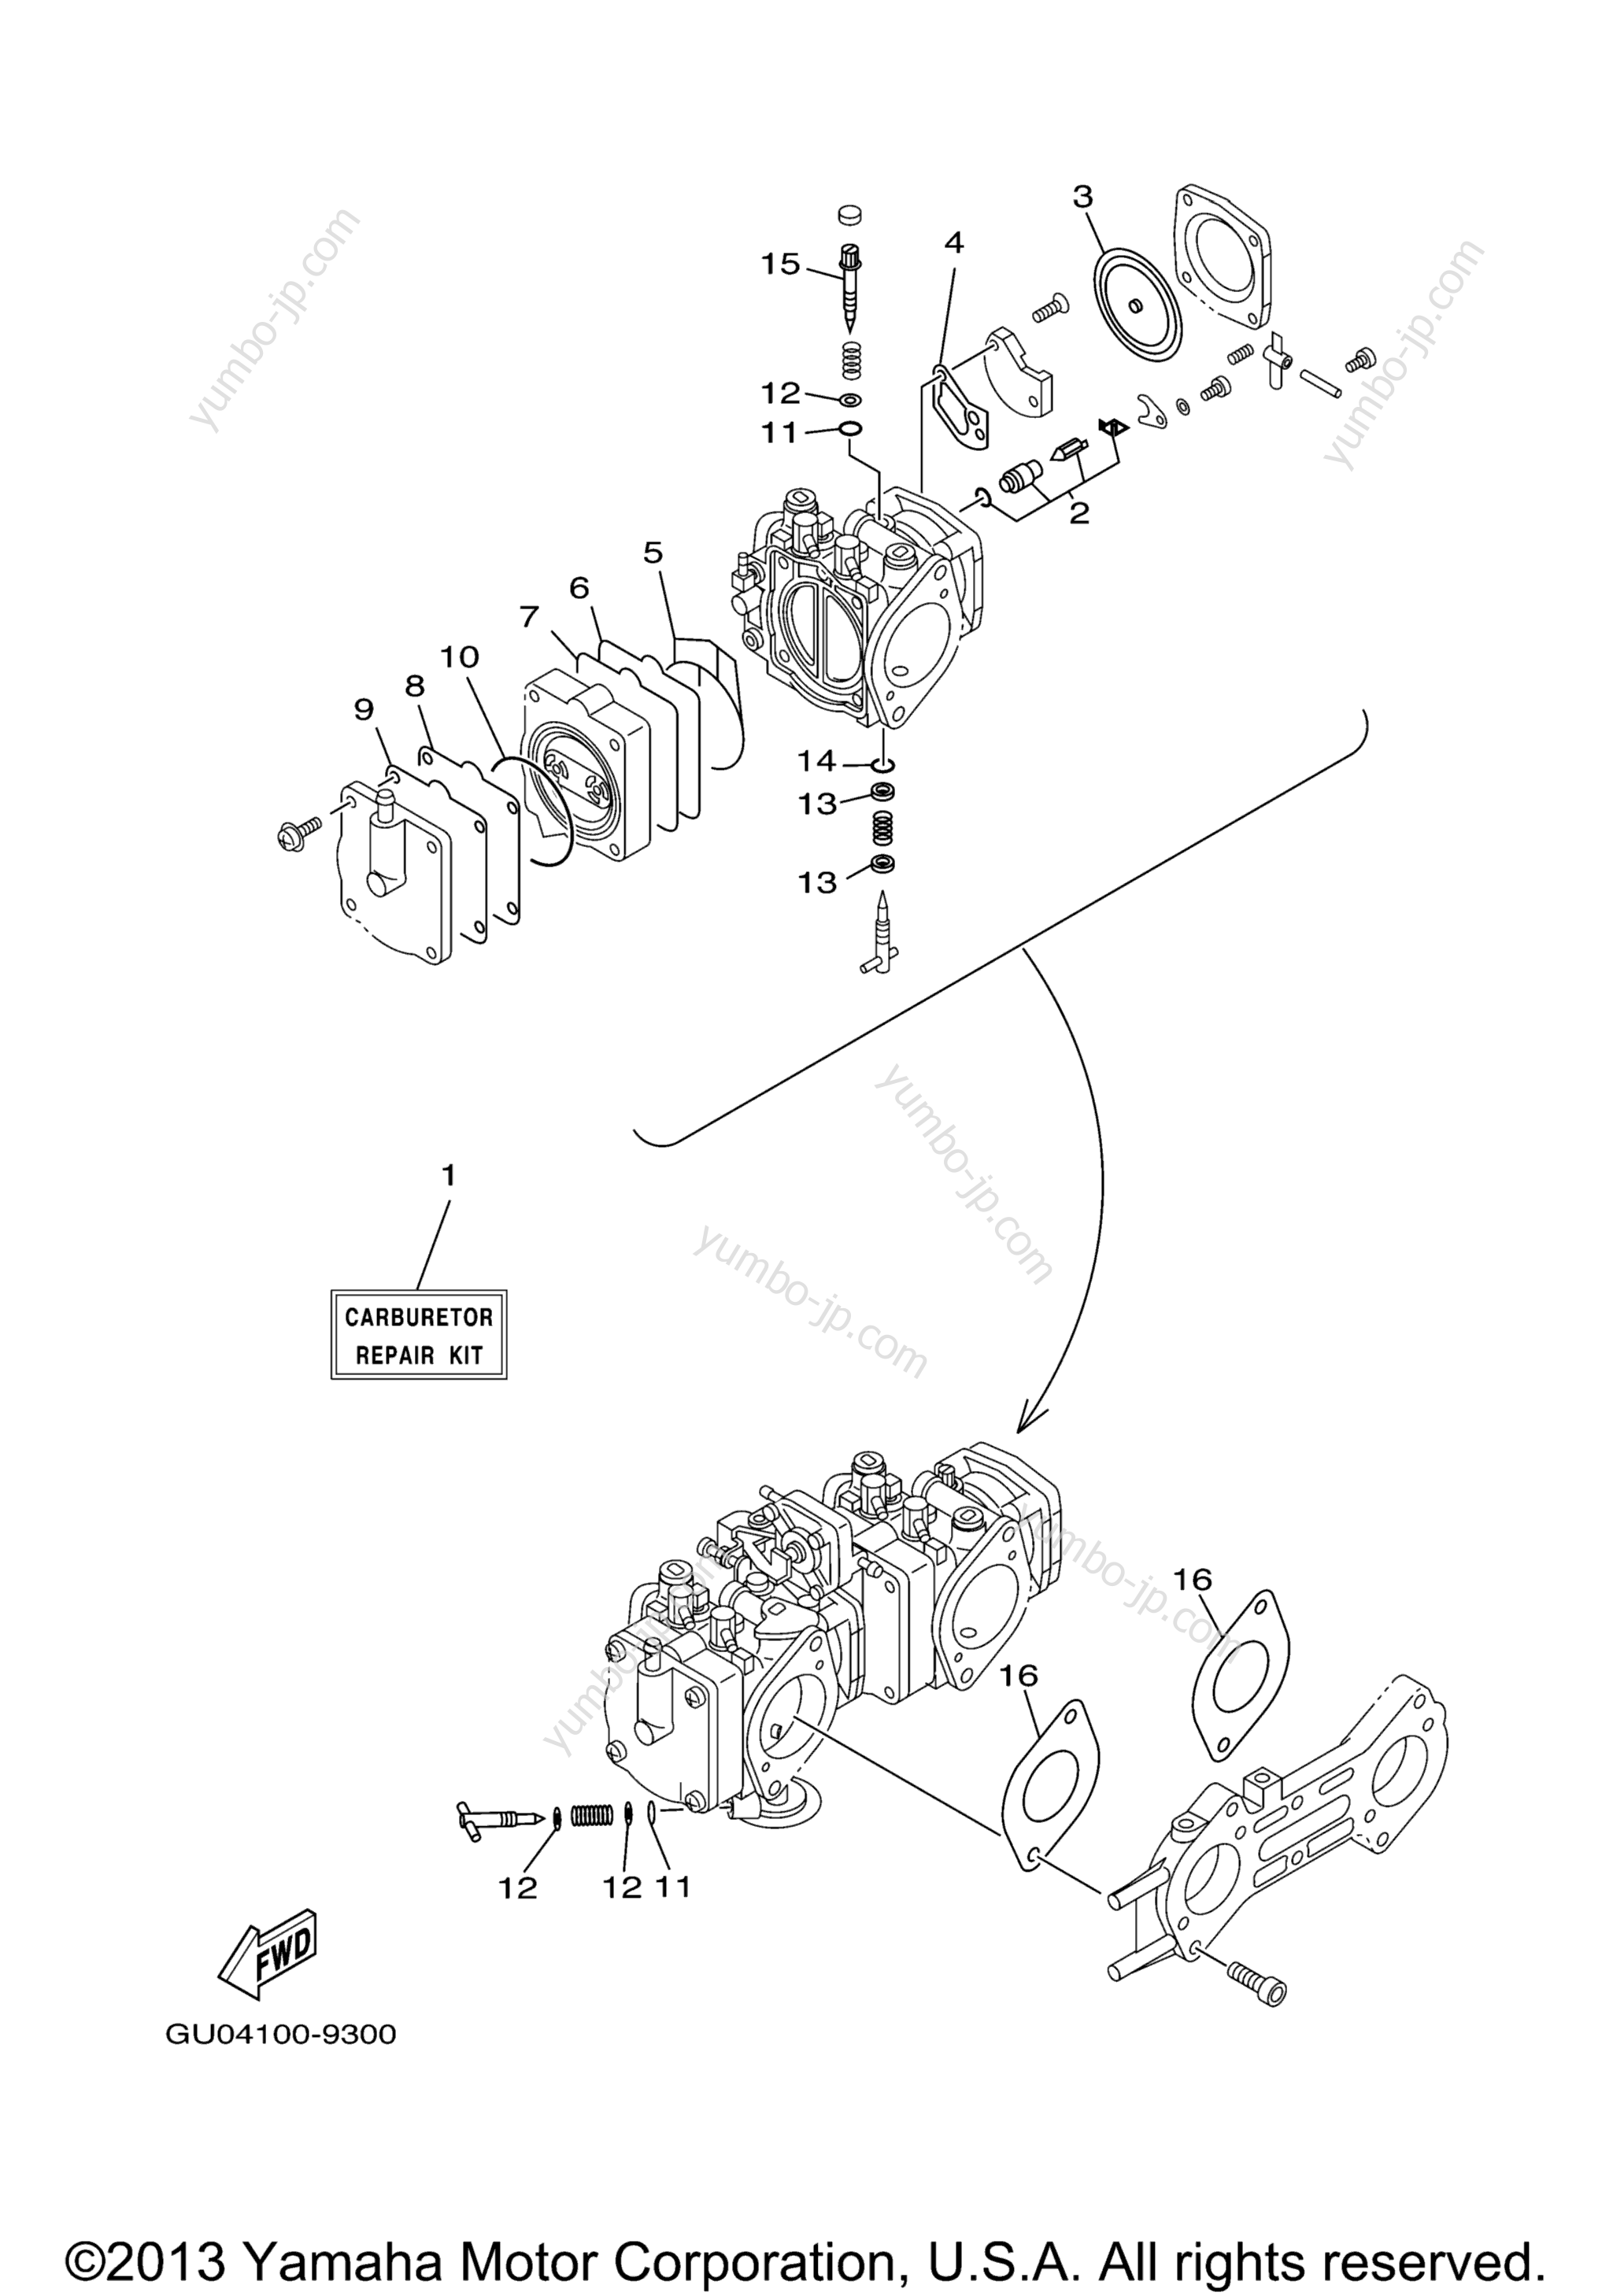 Repair Kit 2 для гидроциклов YAMAHA XL800 (XA800Z) 2001 г.